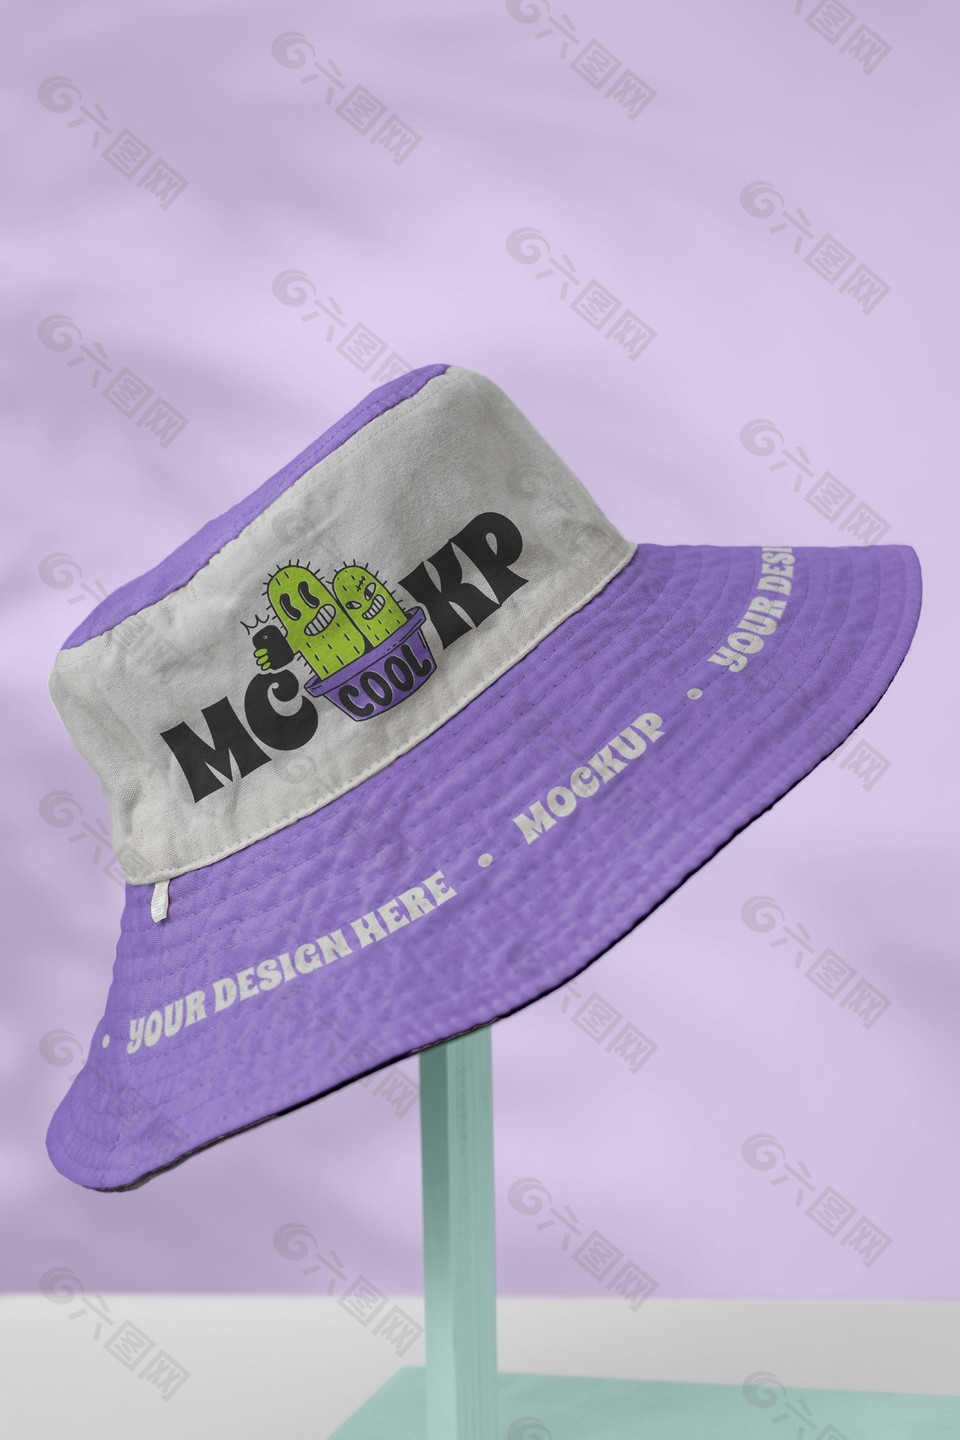 紫色大檐帽遮阳帽样机素材下载平面广告素材免费下载(图片编号:9401895